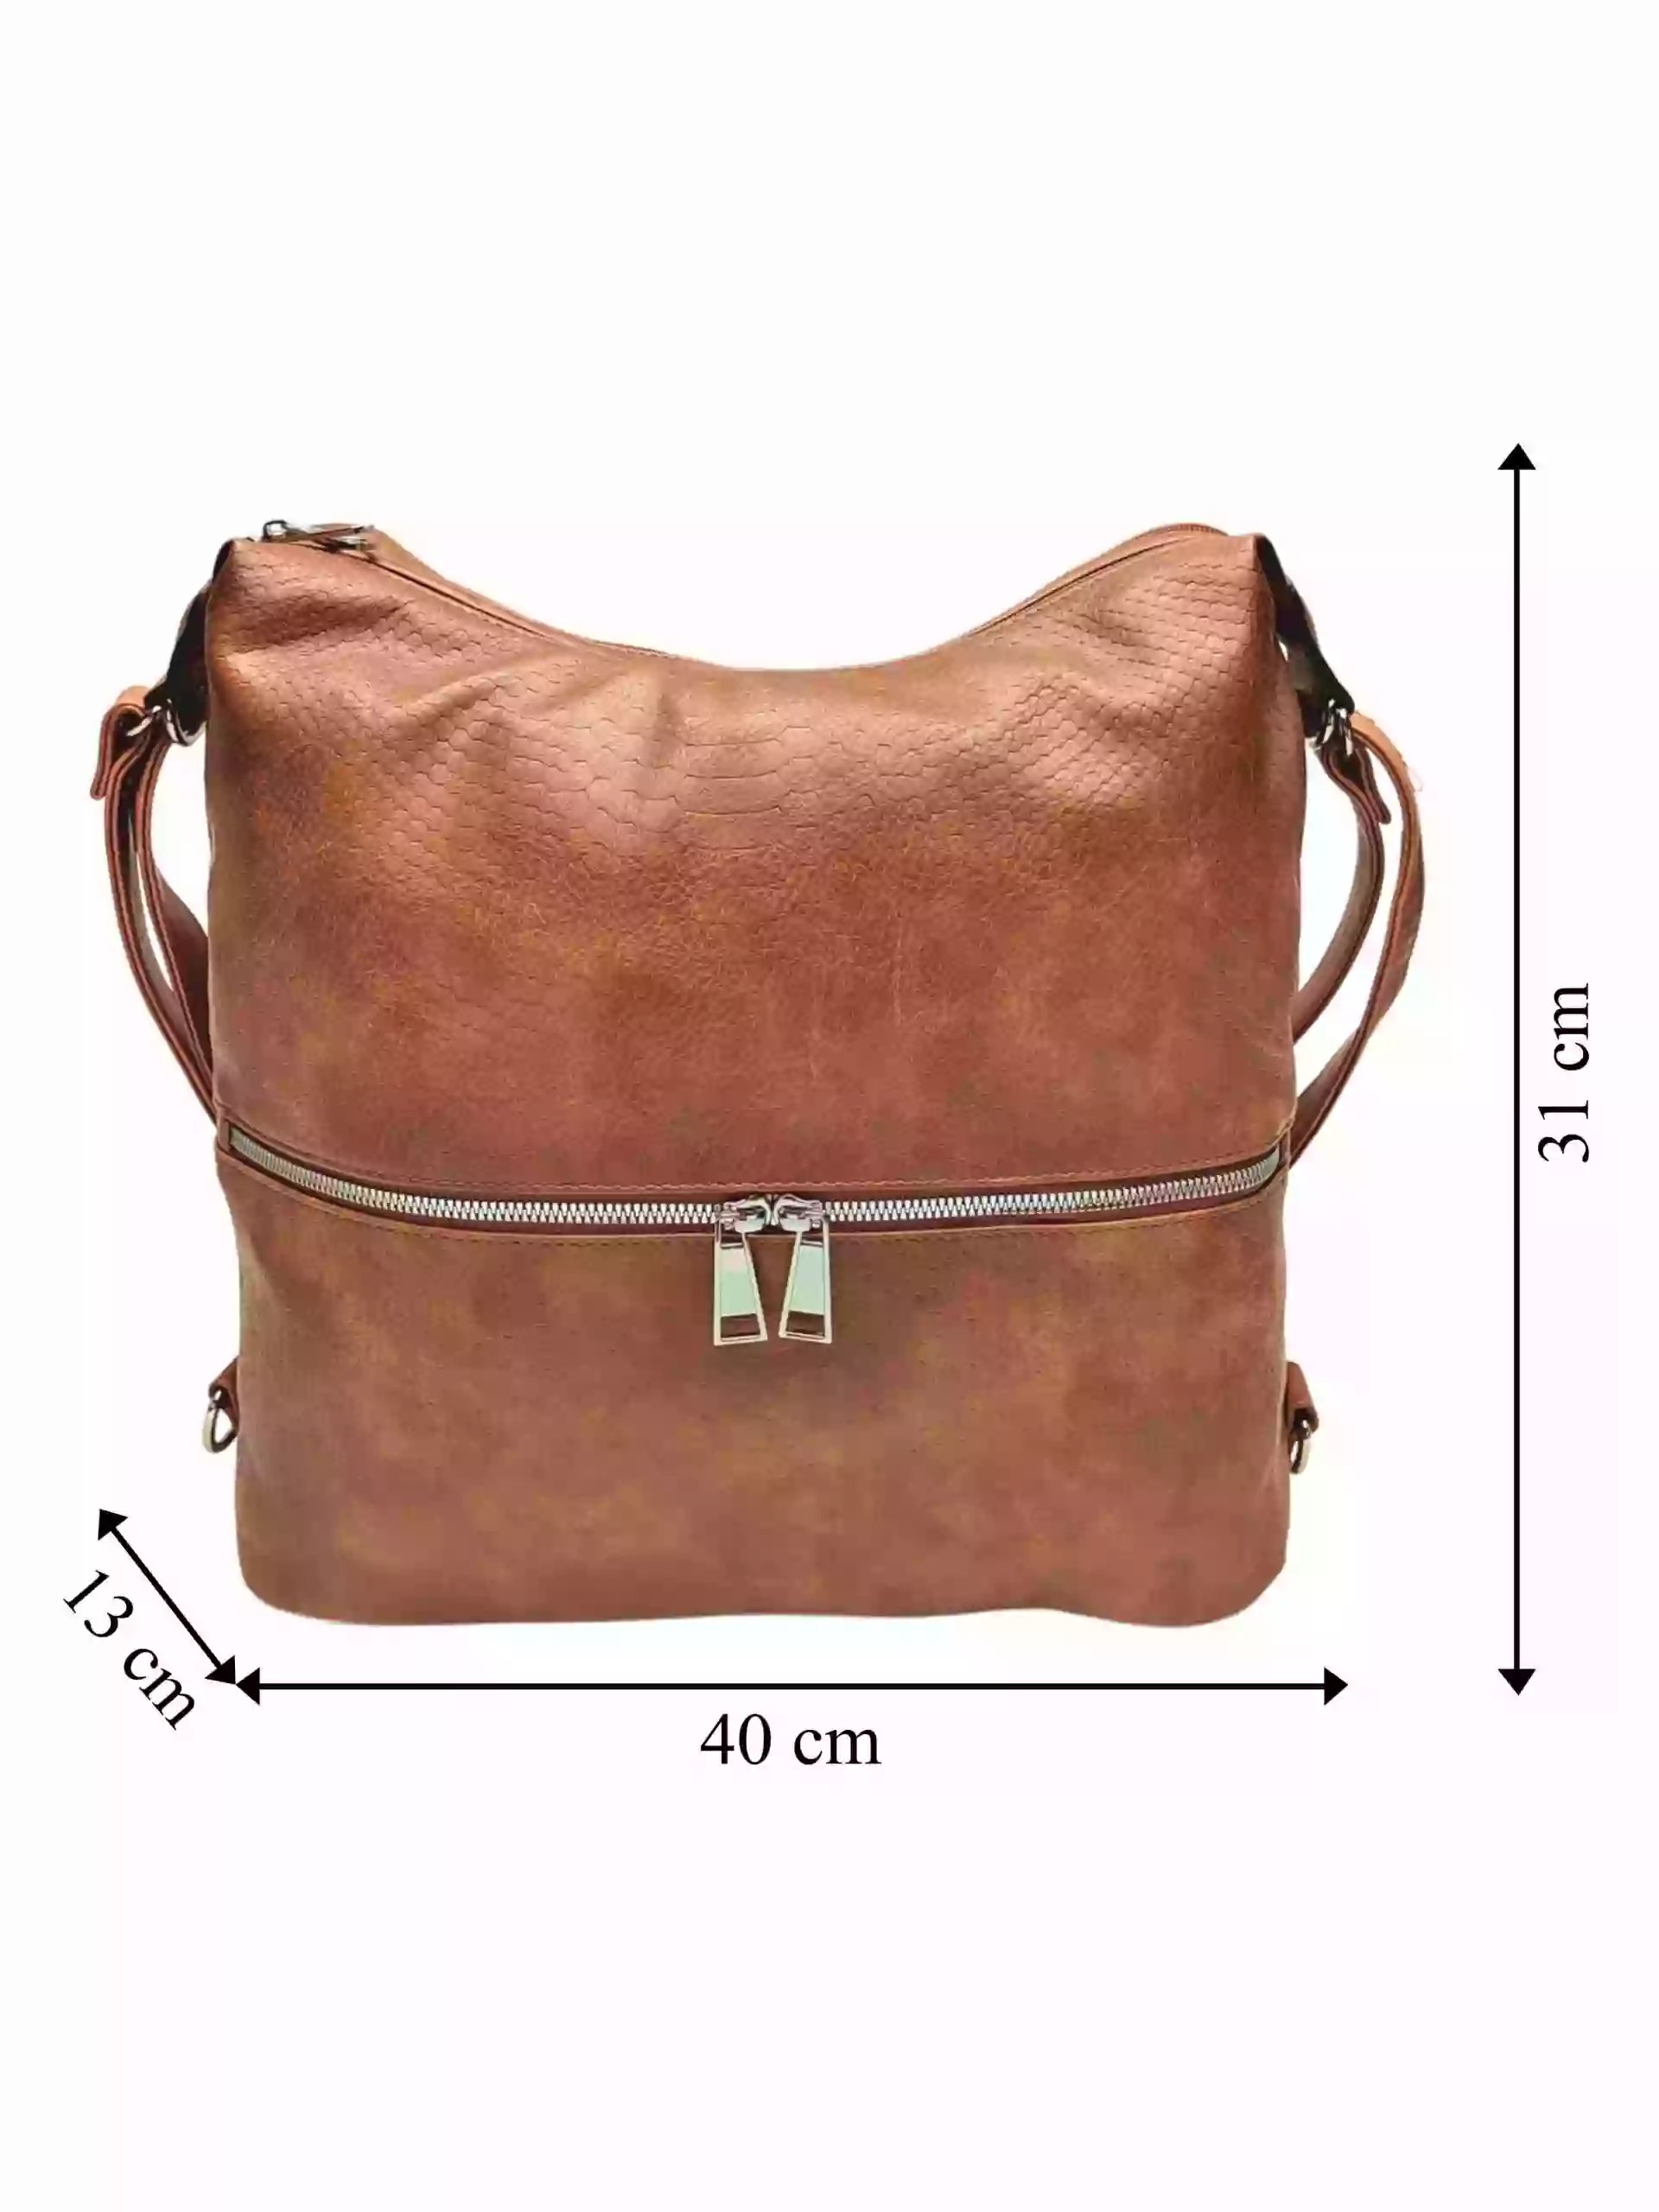 Moderní středně hnědý kabelko-batoh z eko kůže, Tapple, H190010, přední strana kabelko-batohu 2v1 s rozměry